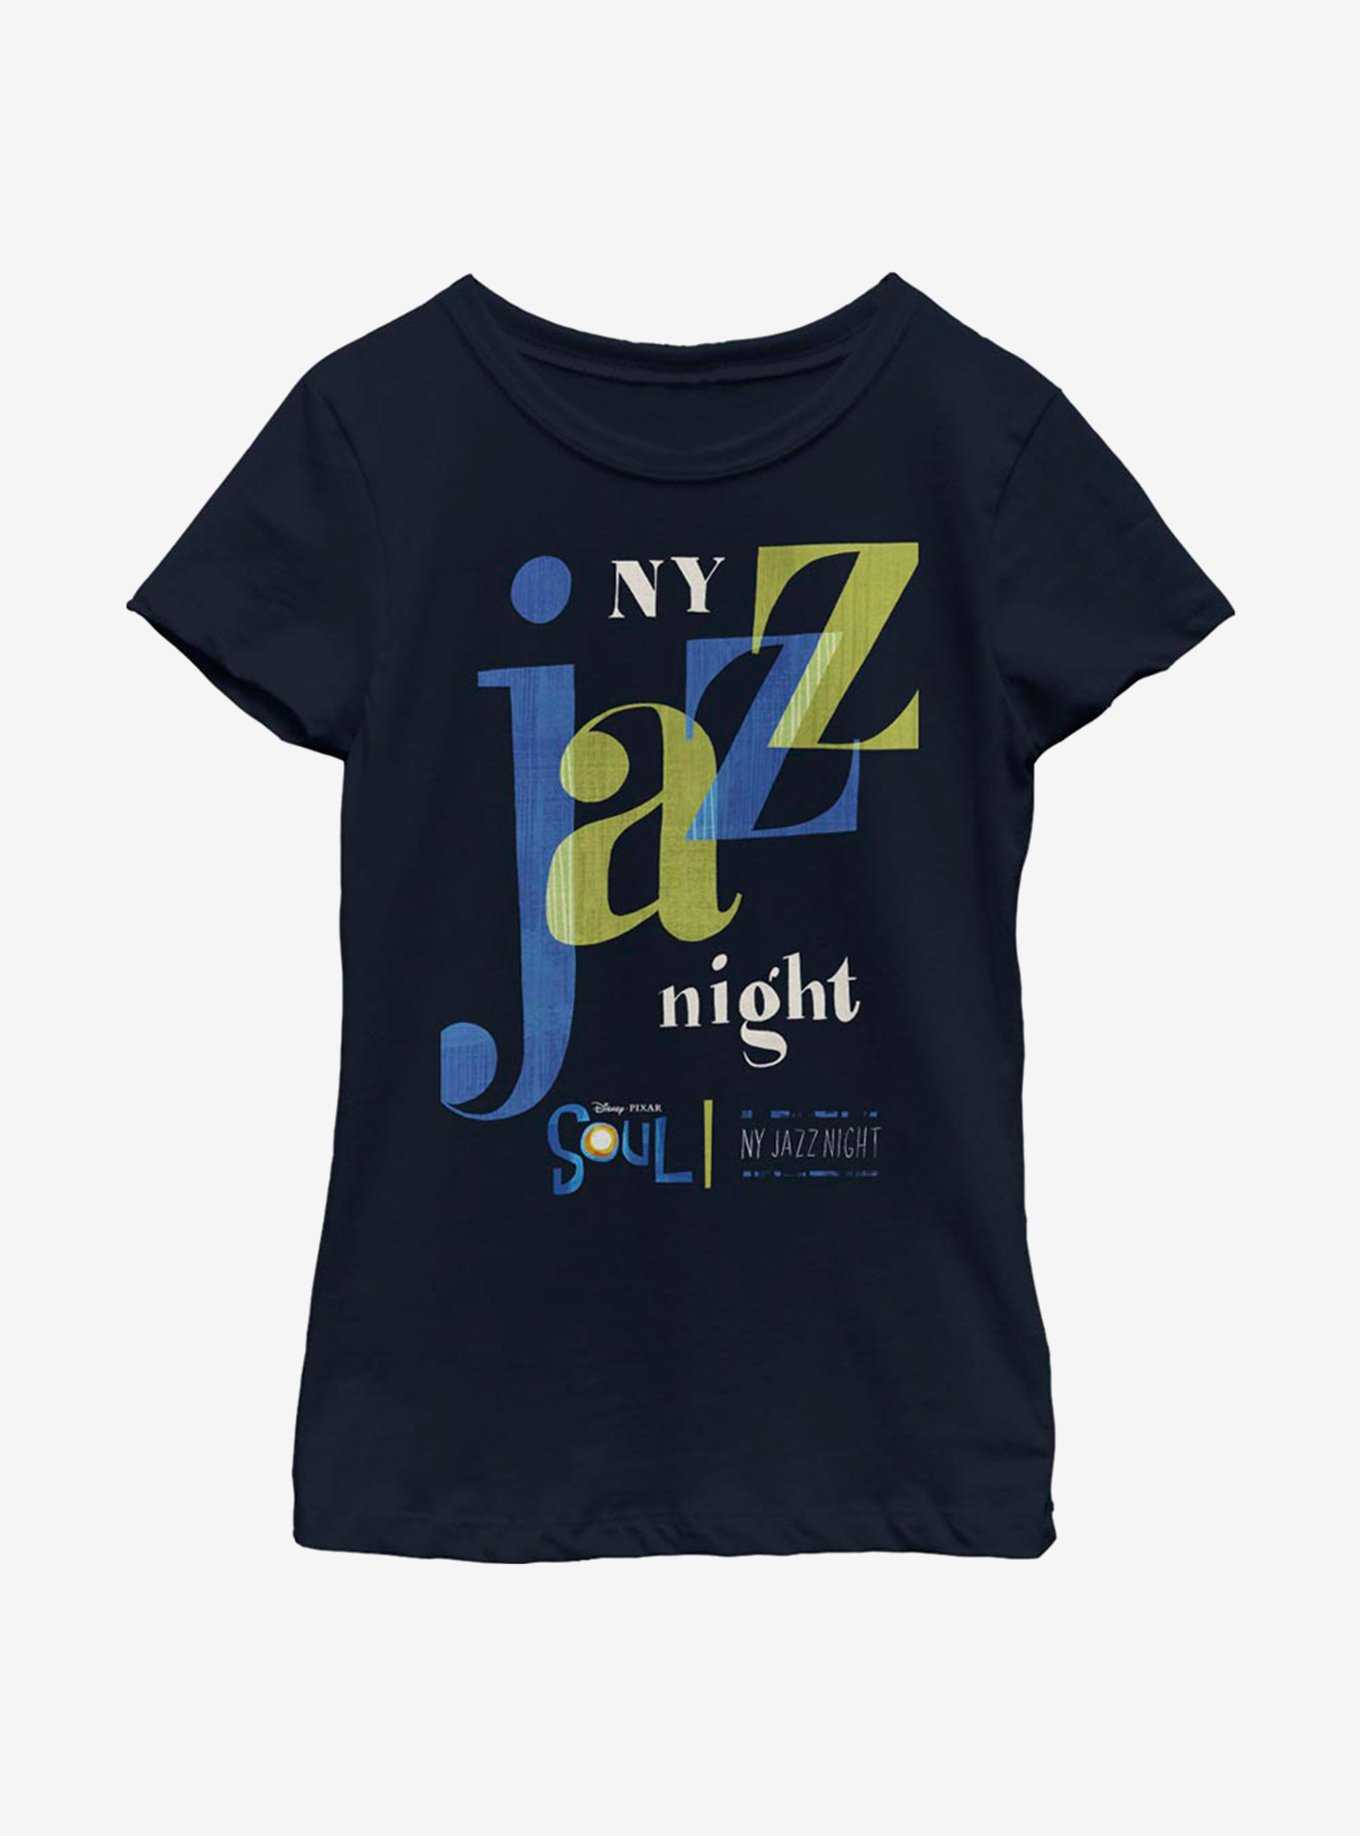 Disney Pixar Soul NY Jazz Night Youth Girls T-Shirt, , hi-res